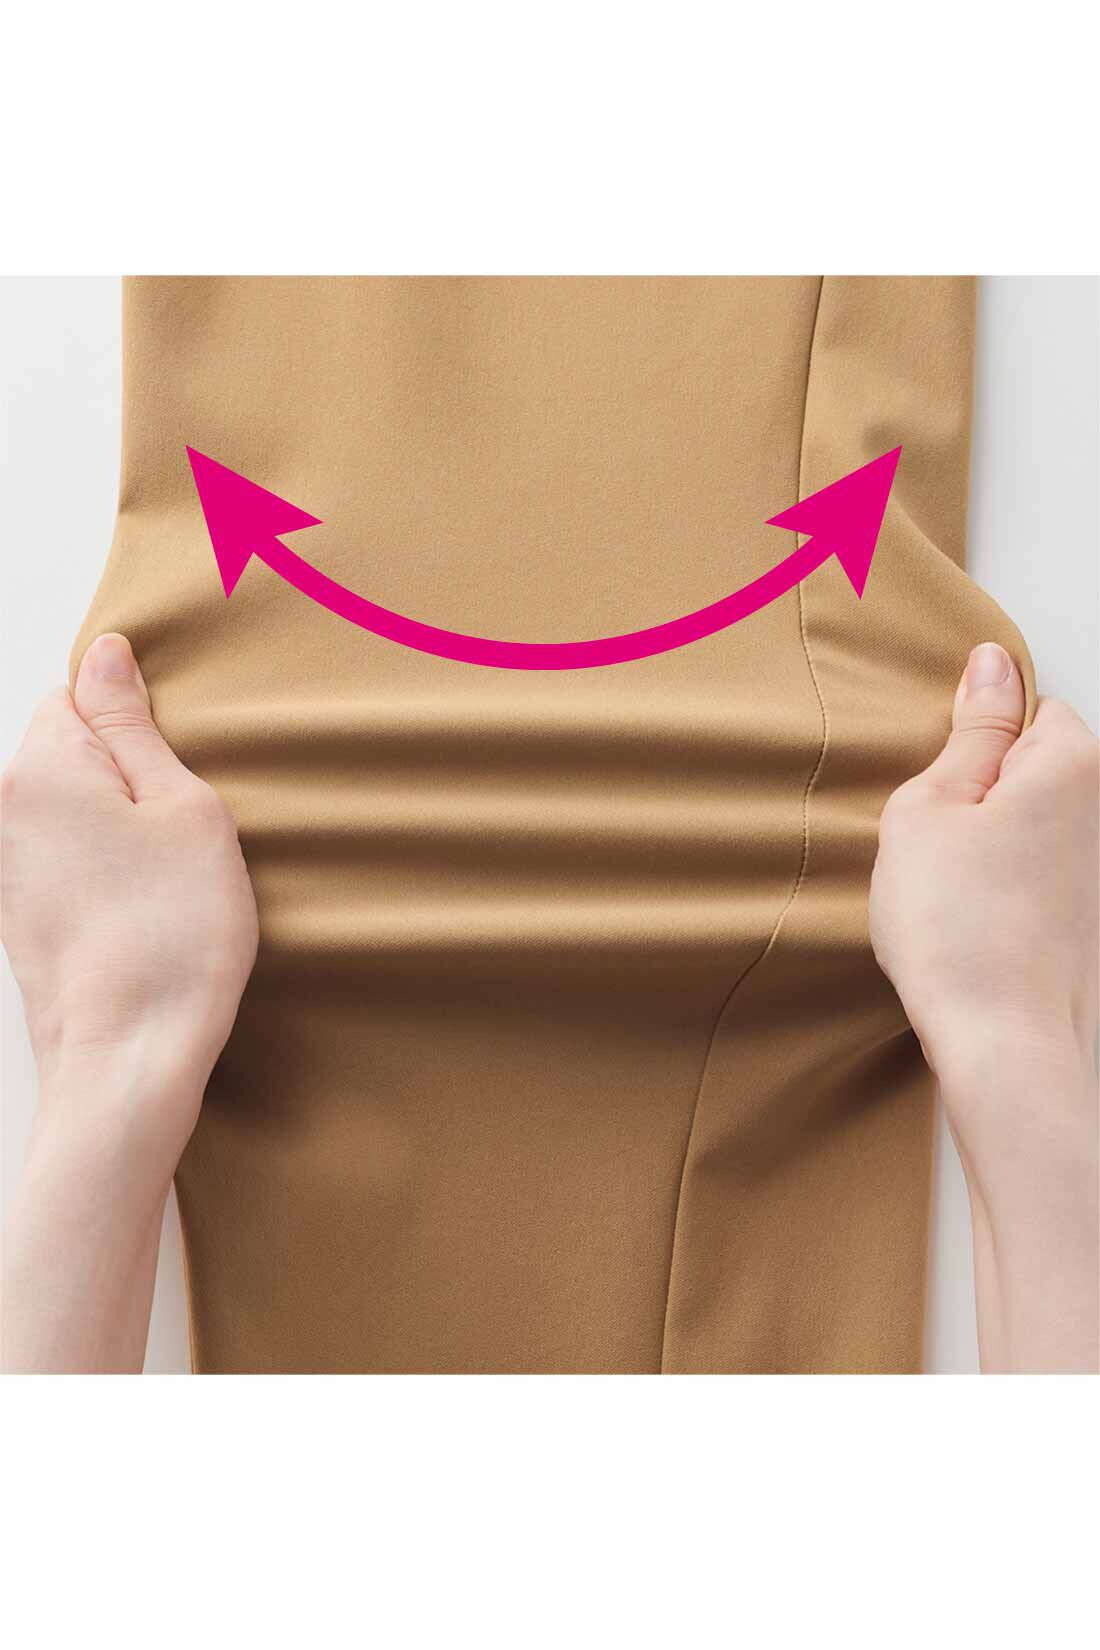 IEDIT[イディット]　ぐいっとしなやか サイドタックデザイン ストレッチ布はく素材のエアノビワイドパンツ〈ベージュ〉|動きに応じてぐいっと伸びるストレッチ素材は、はいているのを忘れるほど軽やかでらくなはき心地。